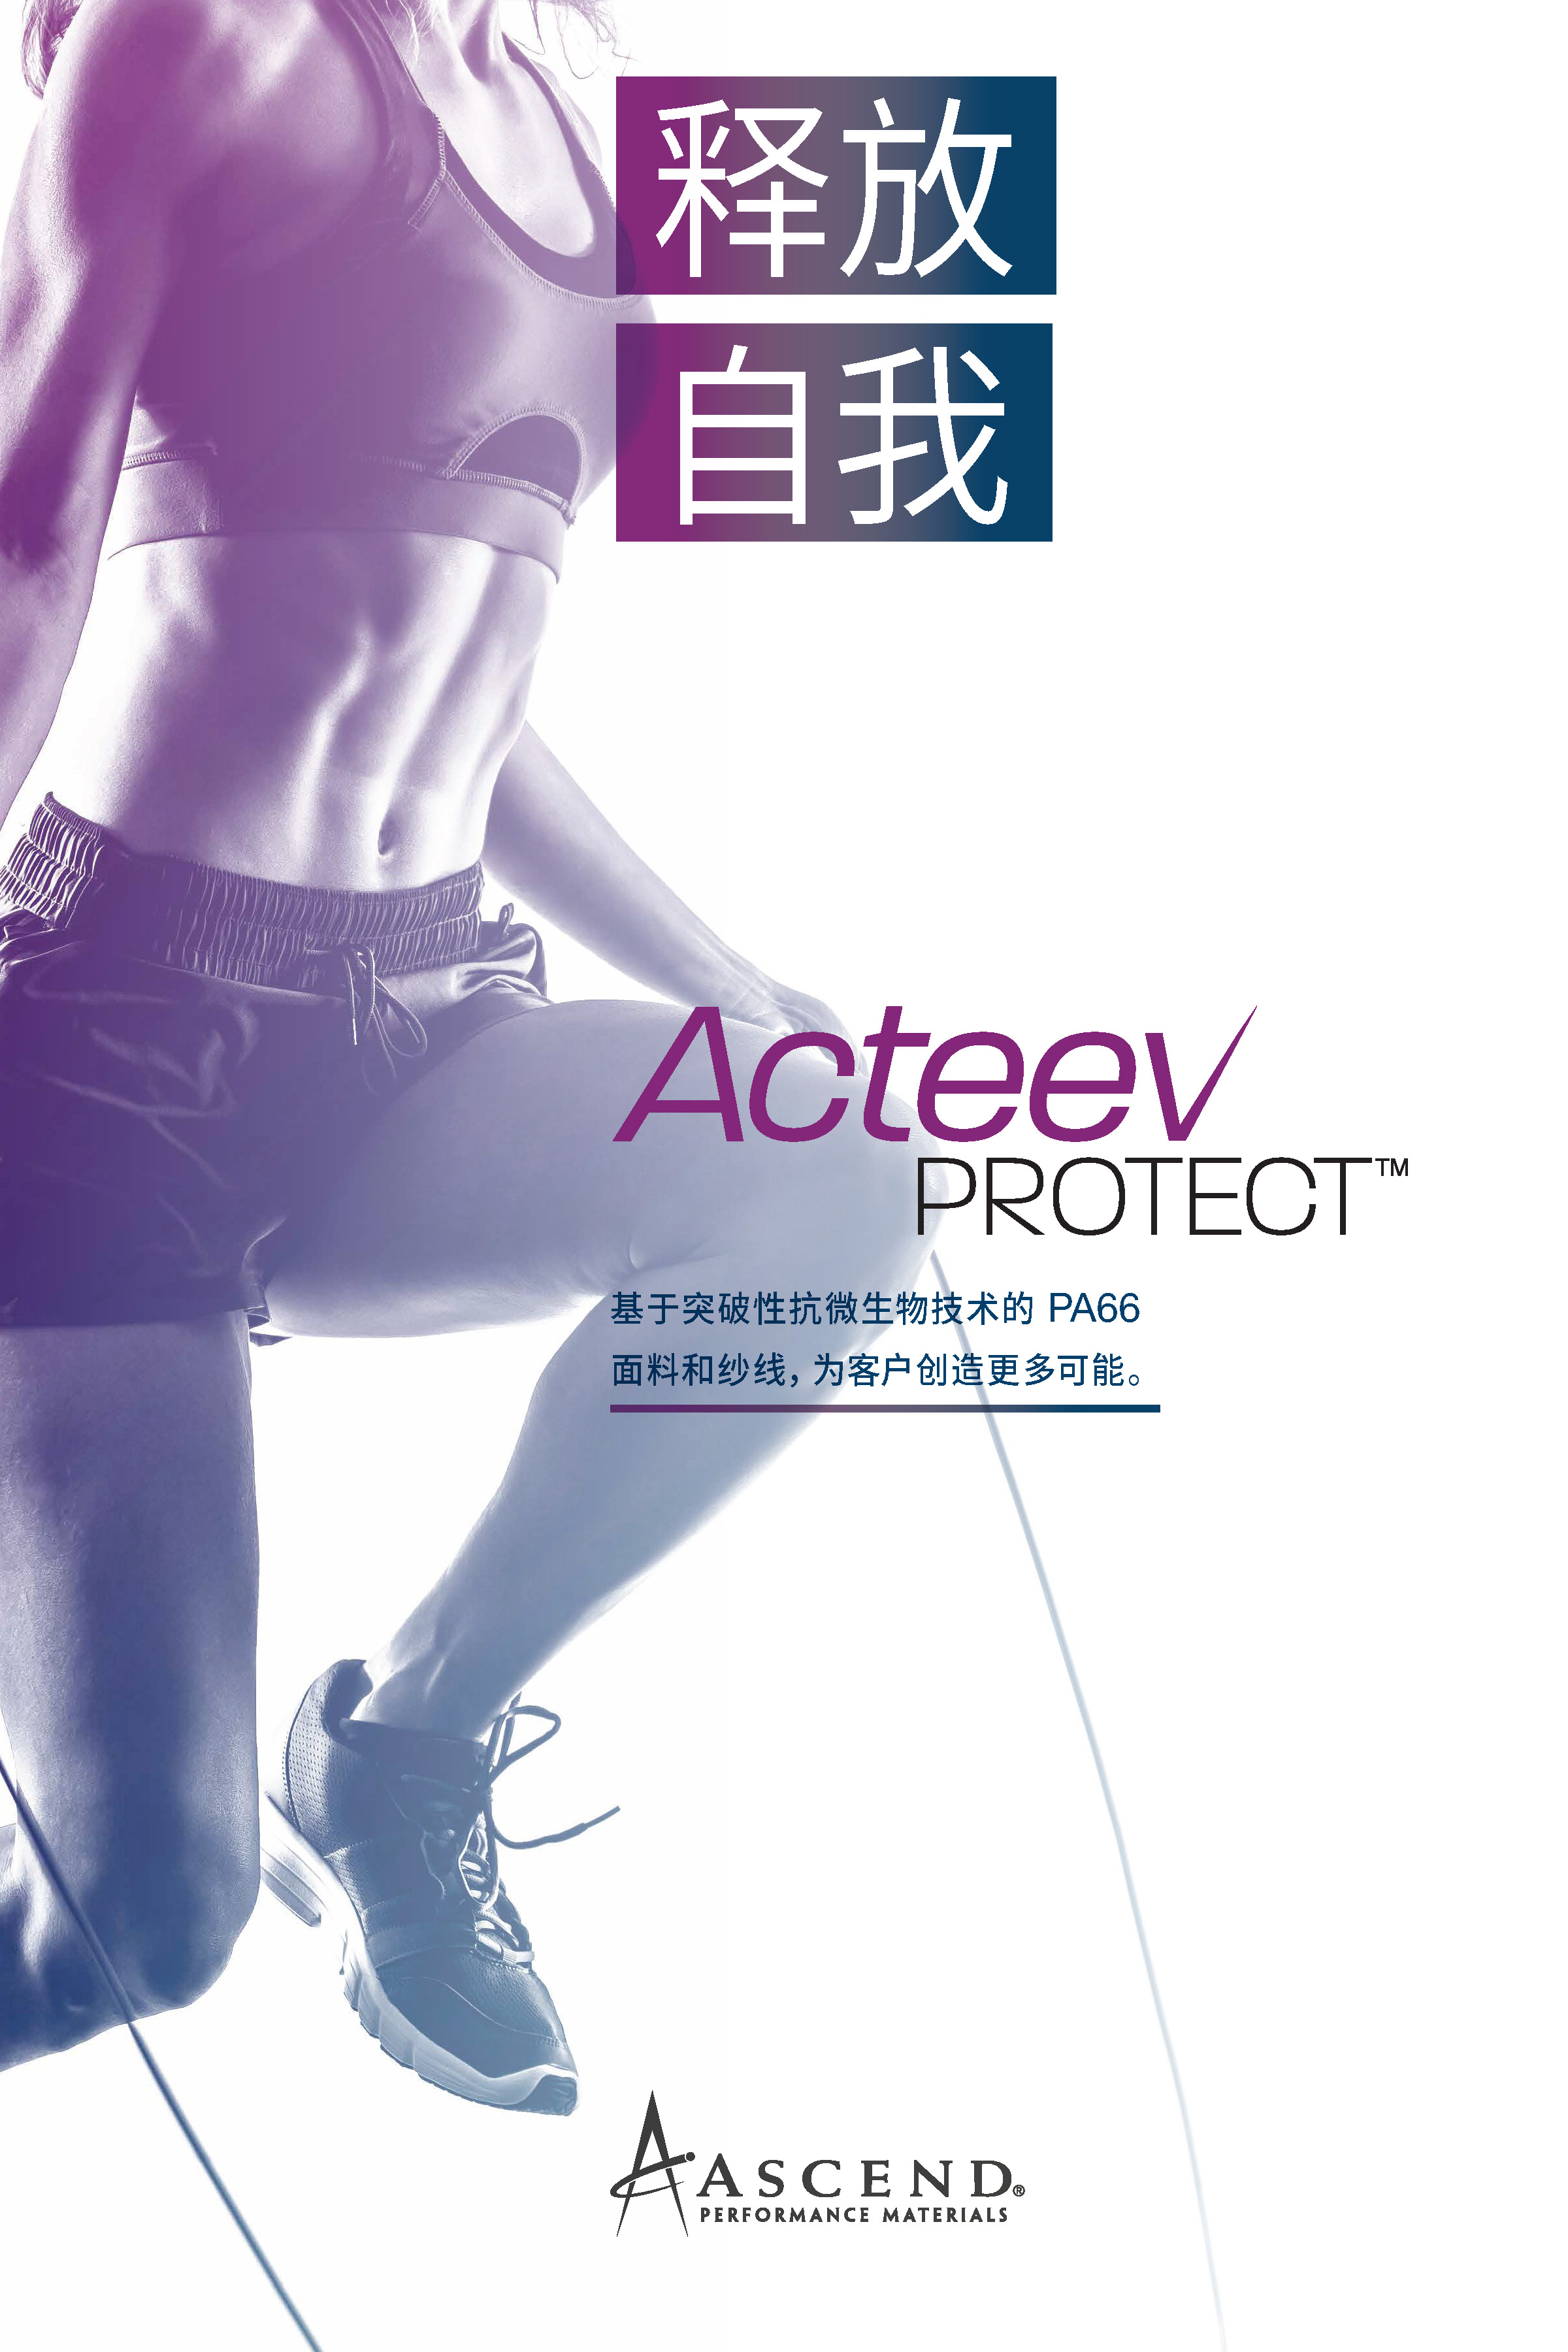 Acteev Protect™面料和纱线